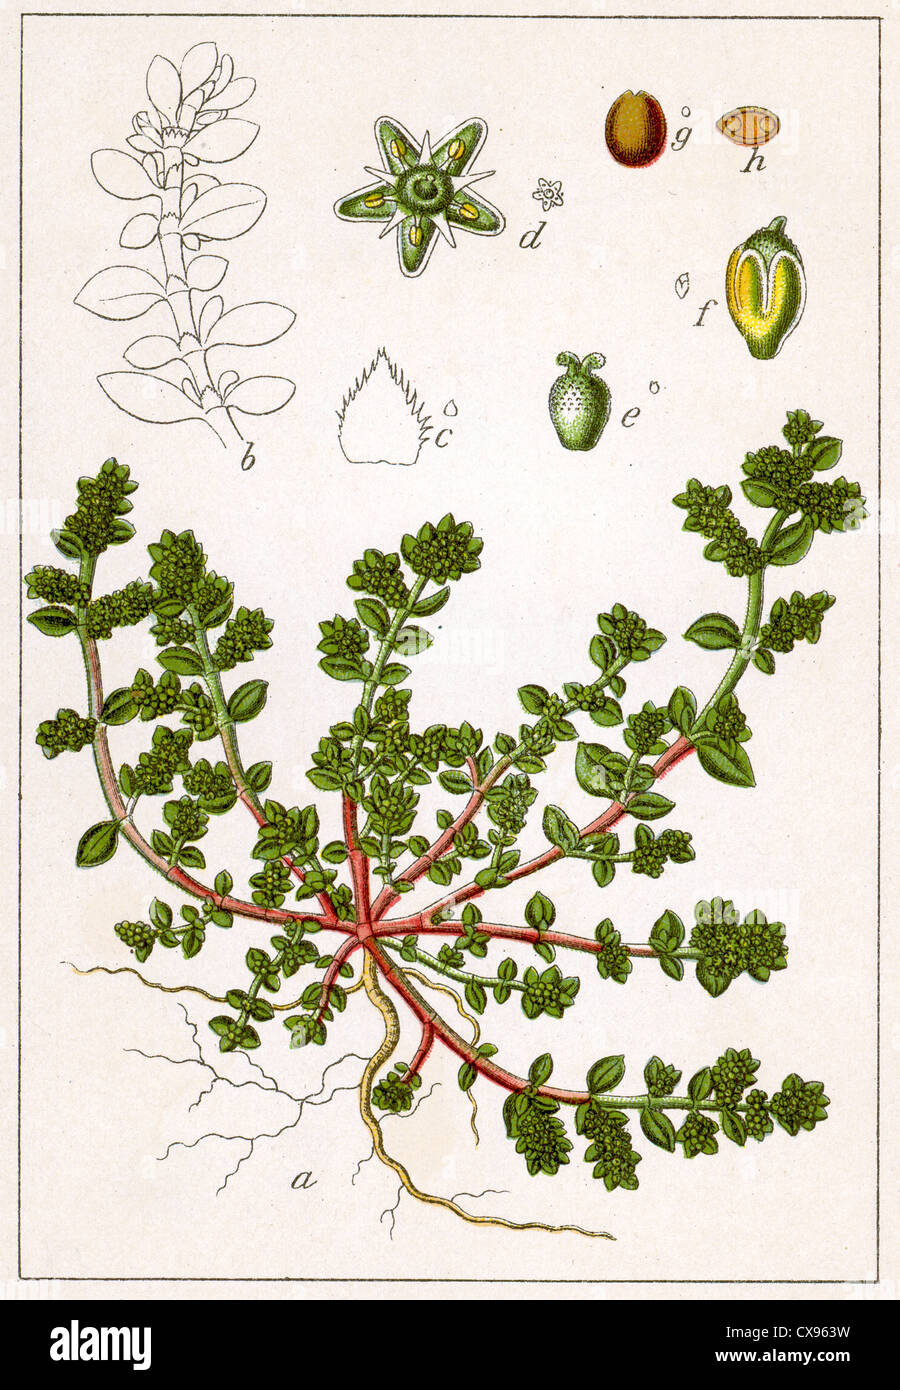 Paronychia herniaria Stock Photo